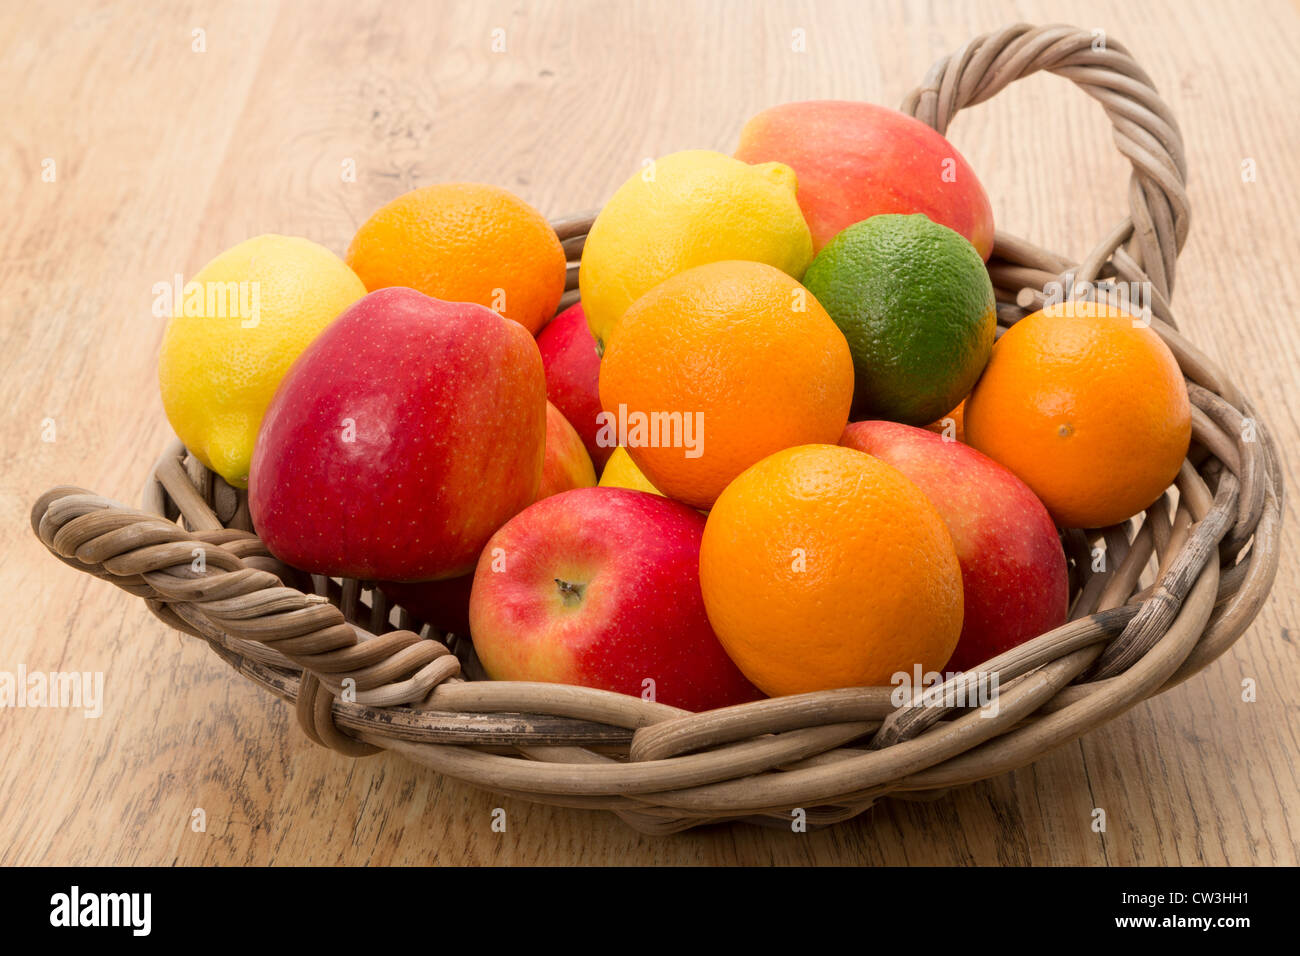 Ein Korb mit einer Auswahl an frischem Obst - Studio gedreht Stockfoto